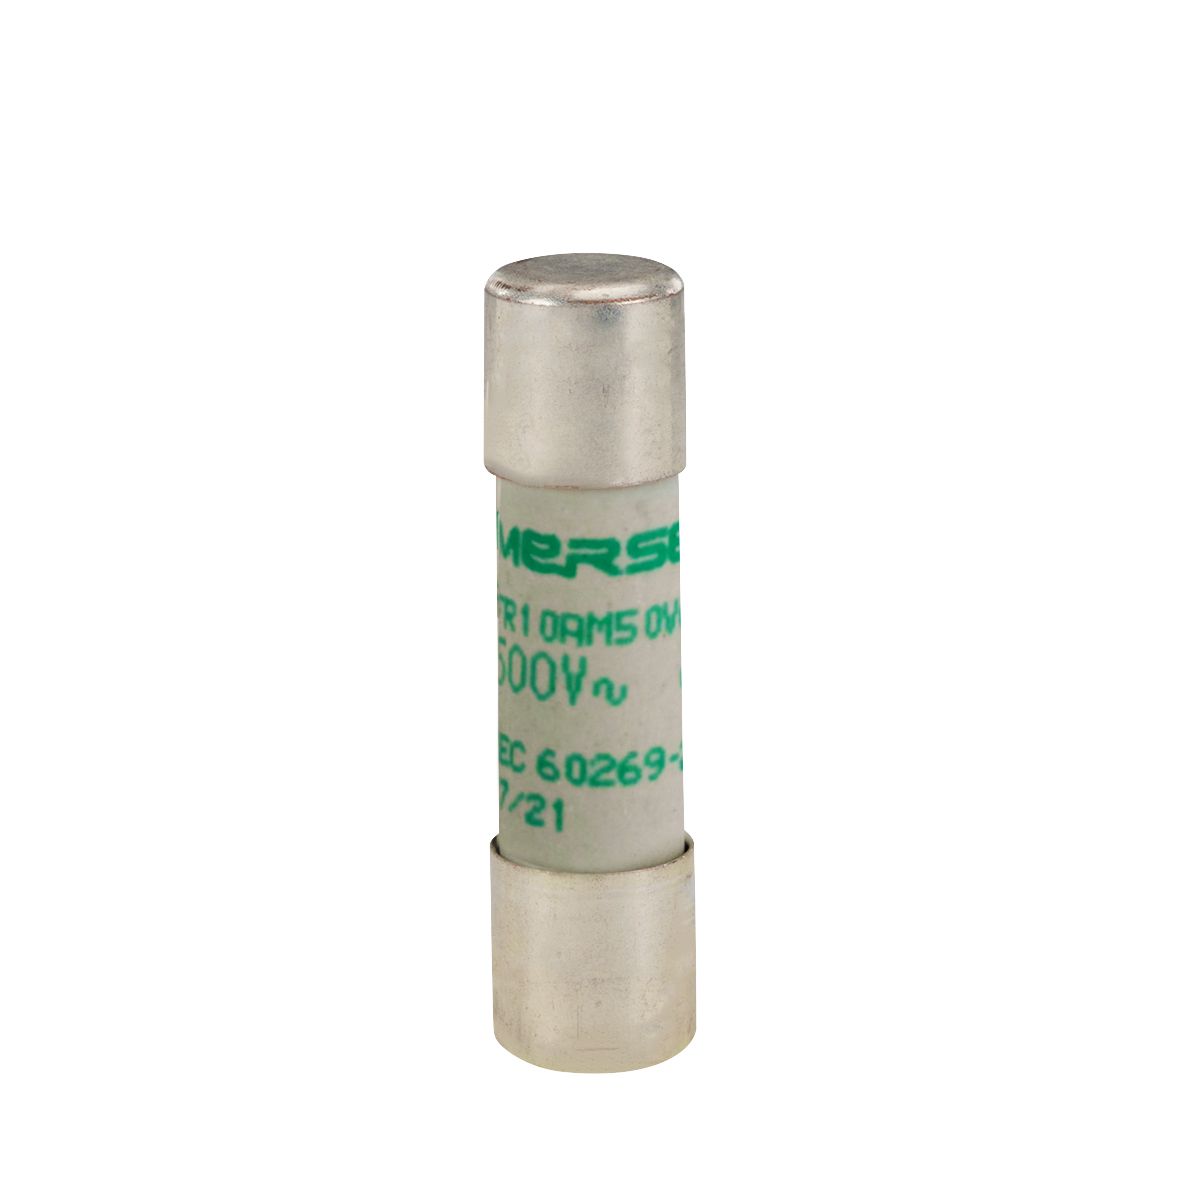 W216150 - Cylindrical fuse-link aM 500VAC 10.3x38, 0.5A